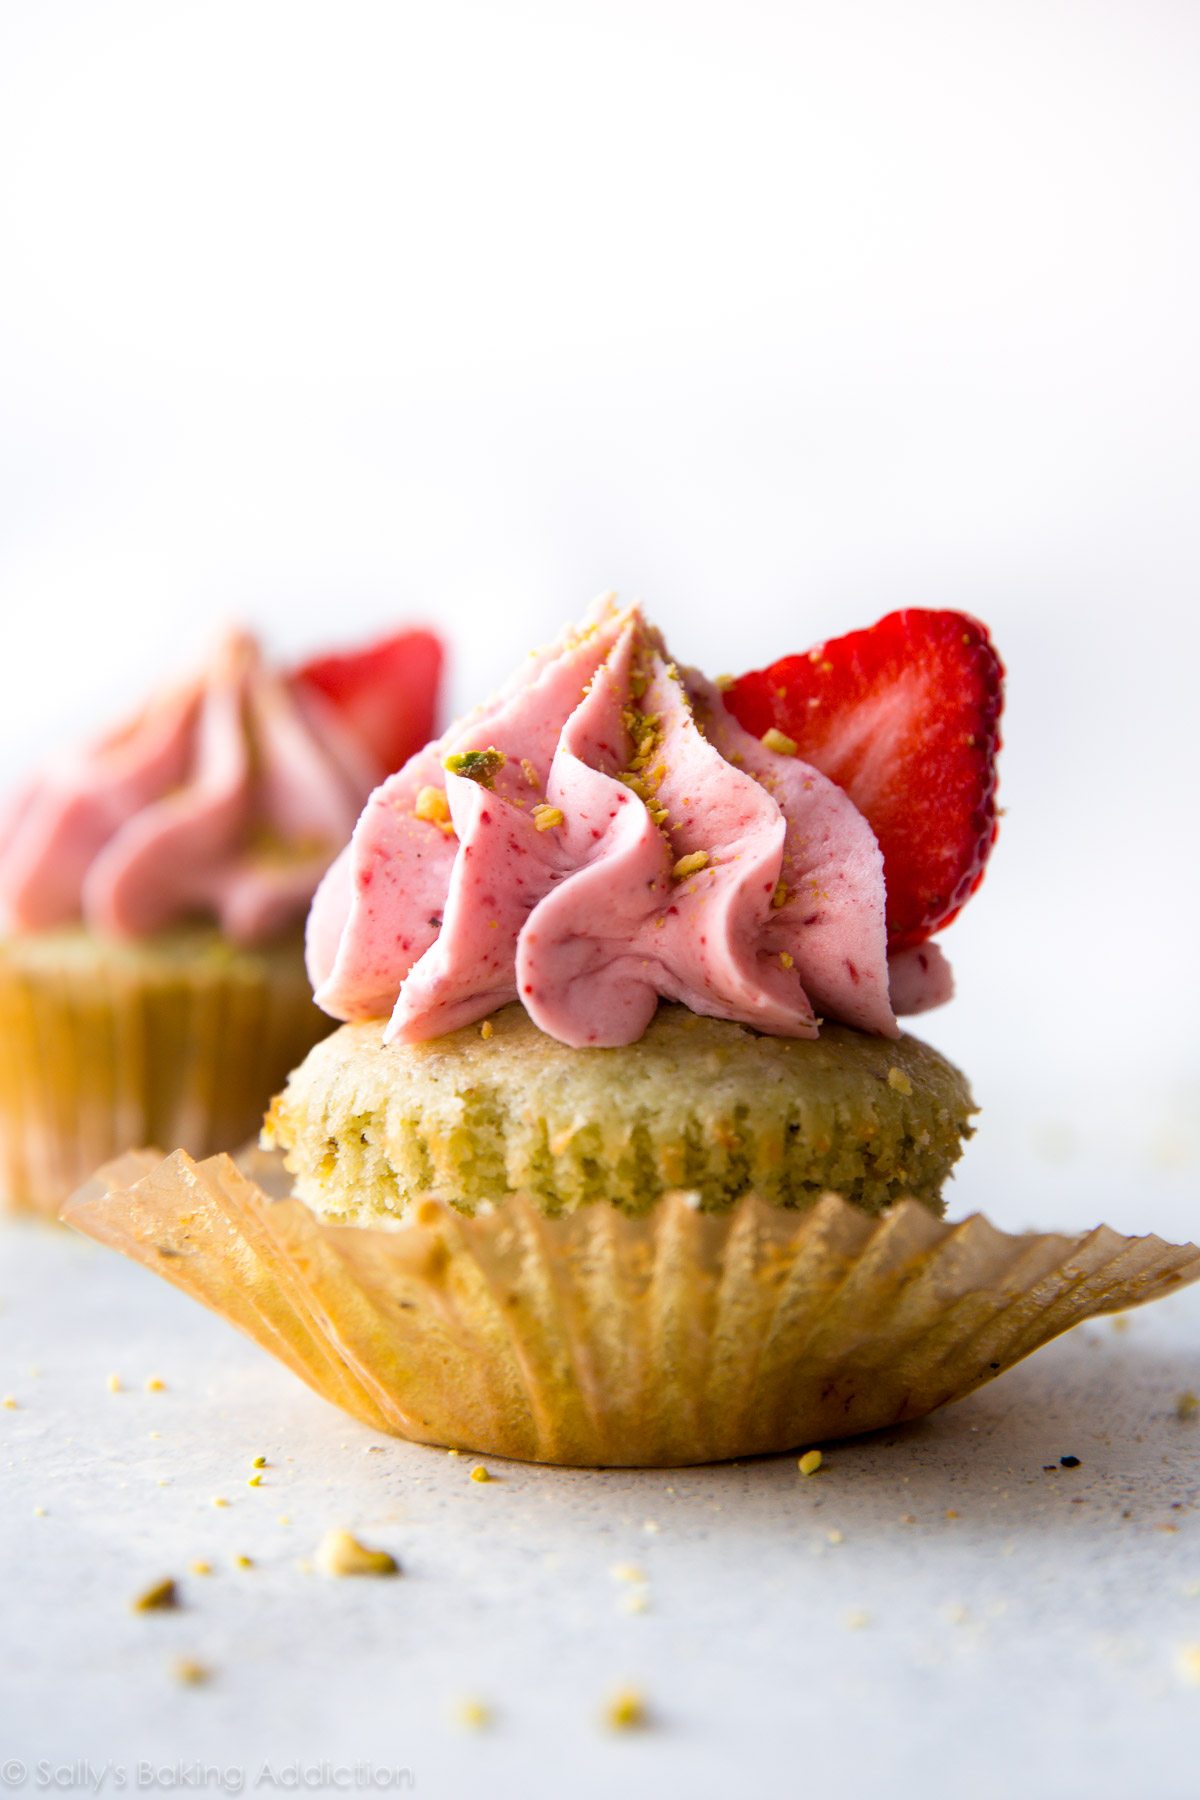 Cupcakes à la pistache délicieusement simples à partir de zéro avec un glaçage crémeux aux fraises! Recette sur sallysbakingaddiction.com